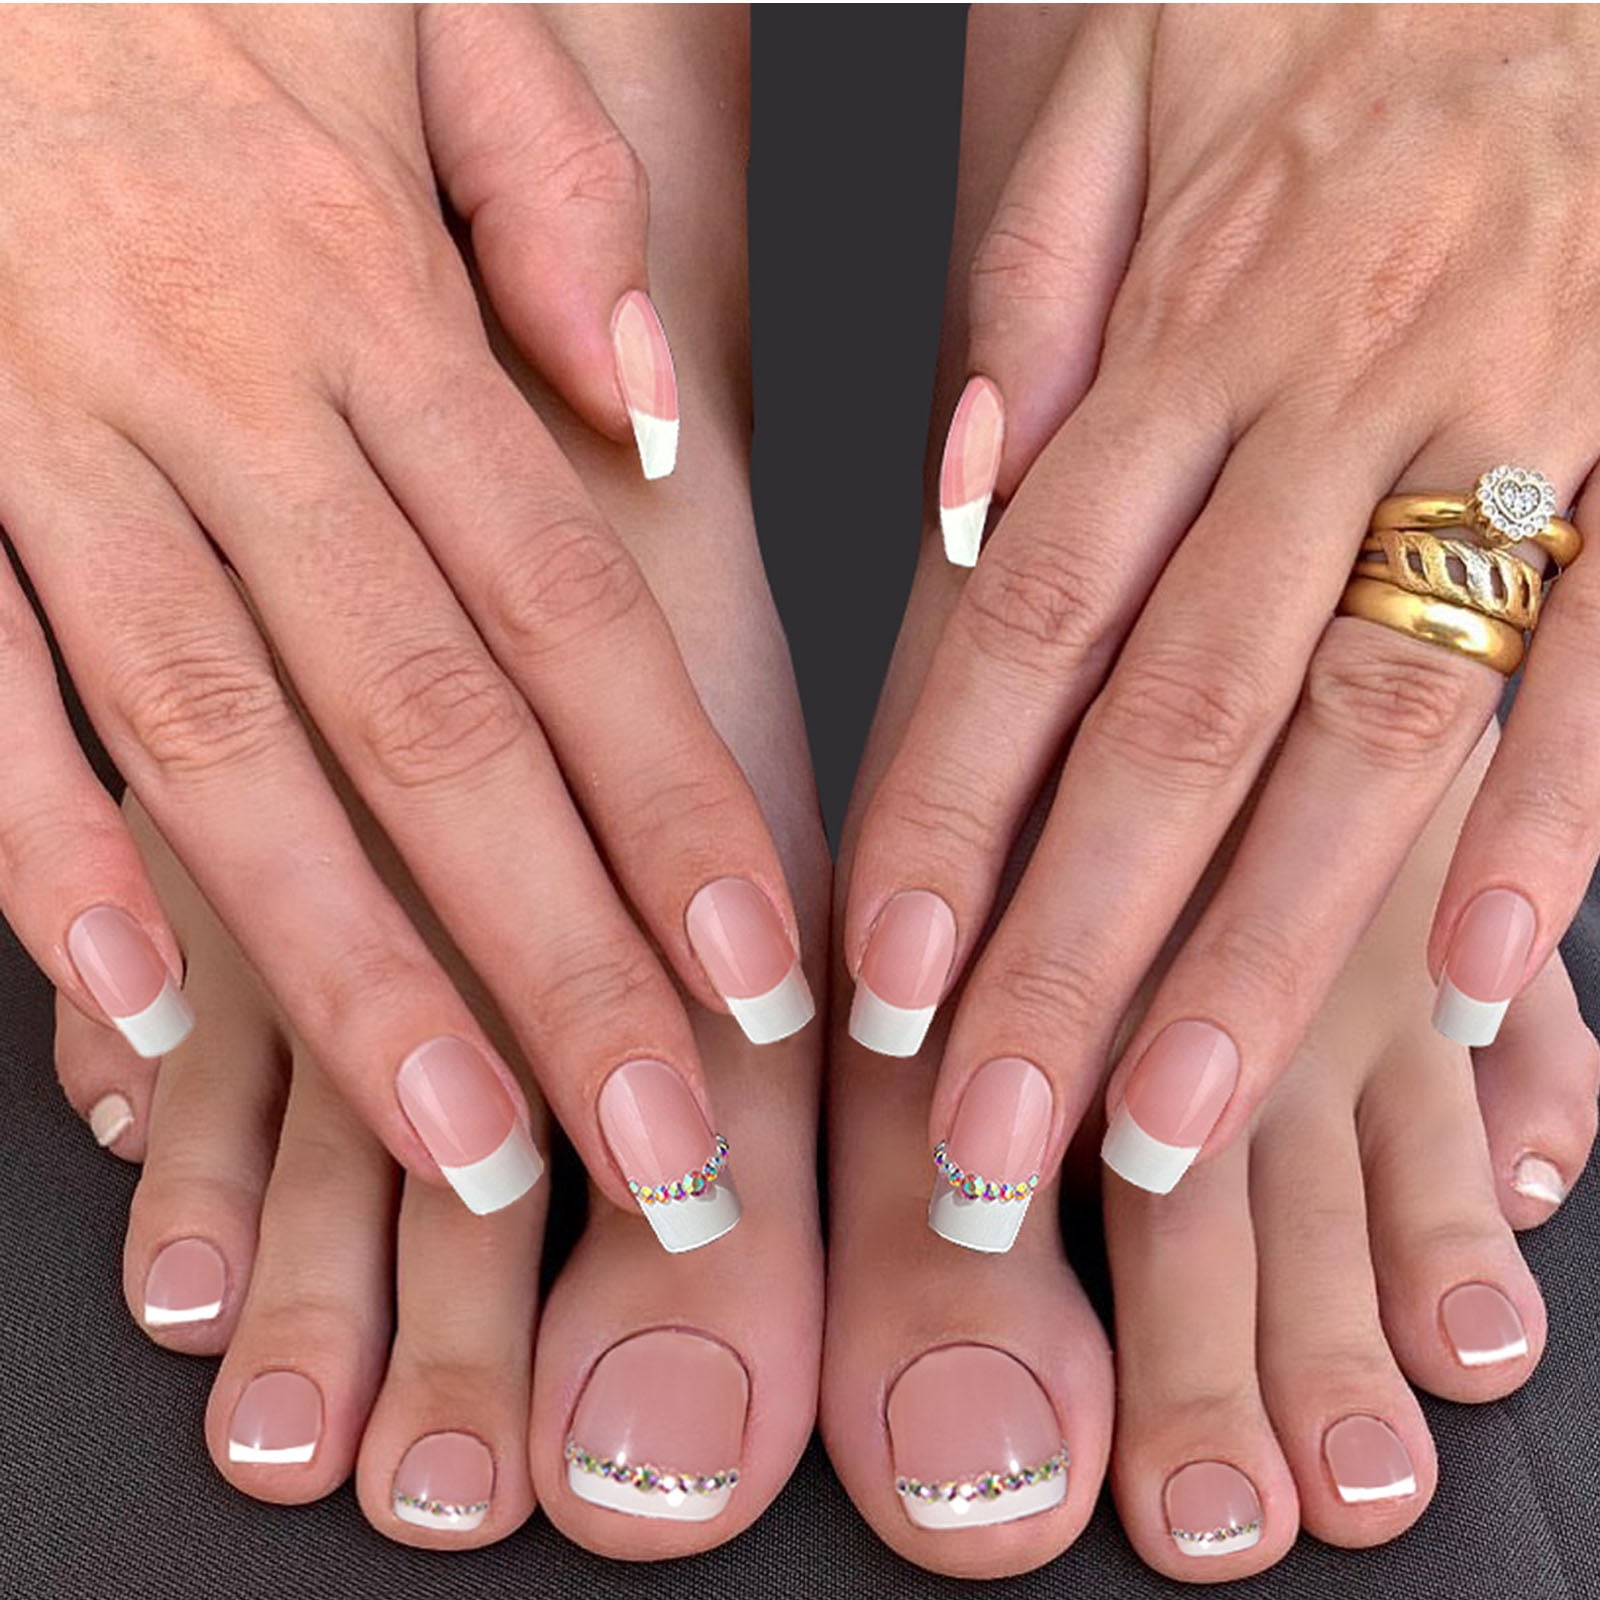 Buy Gortin Glossy Fakes Toe Nails Press on Toenails Pink Acrylic Nails  Square Short False Foot Nails Artificial Nails for Women 24 Pcs Online at  desertcartINDIA